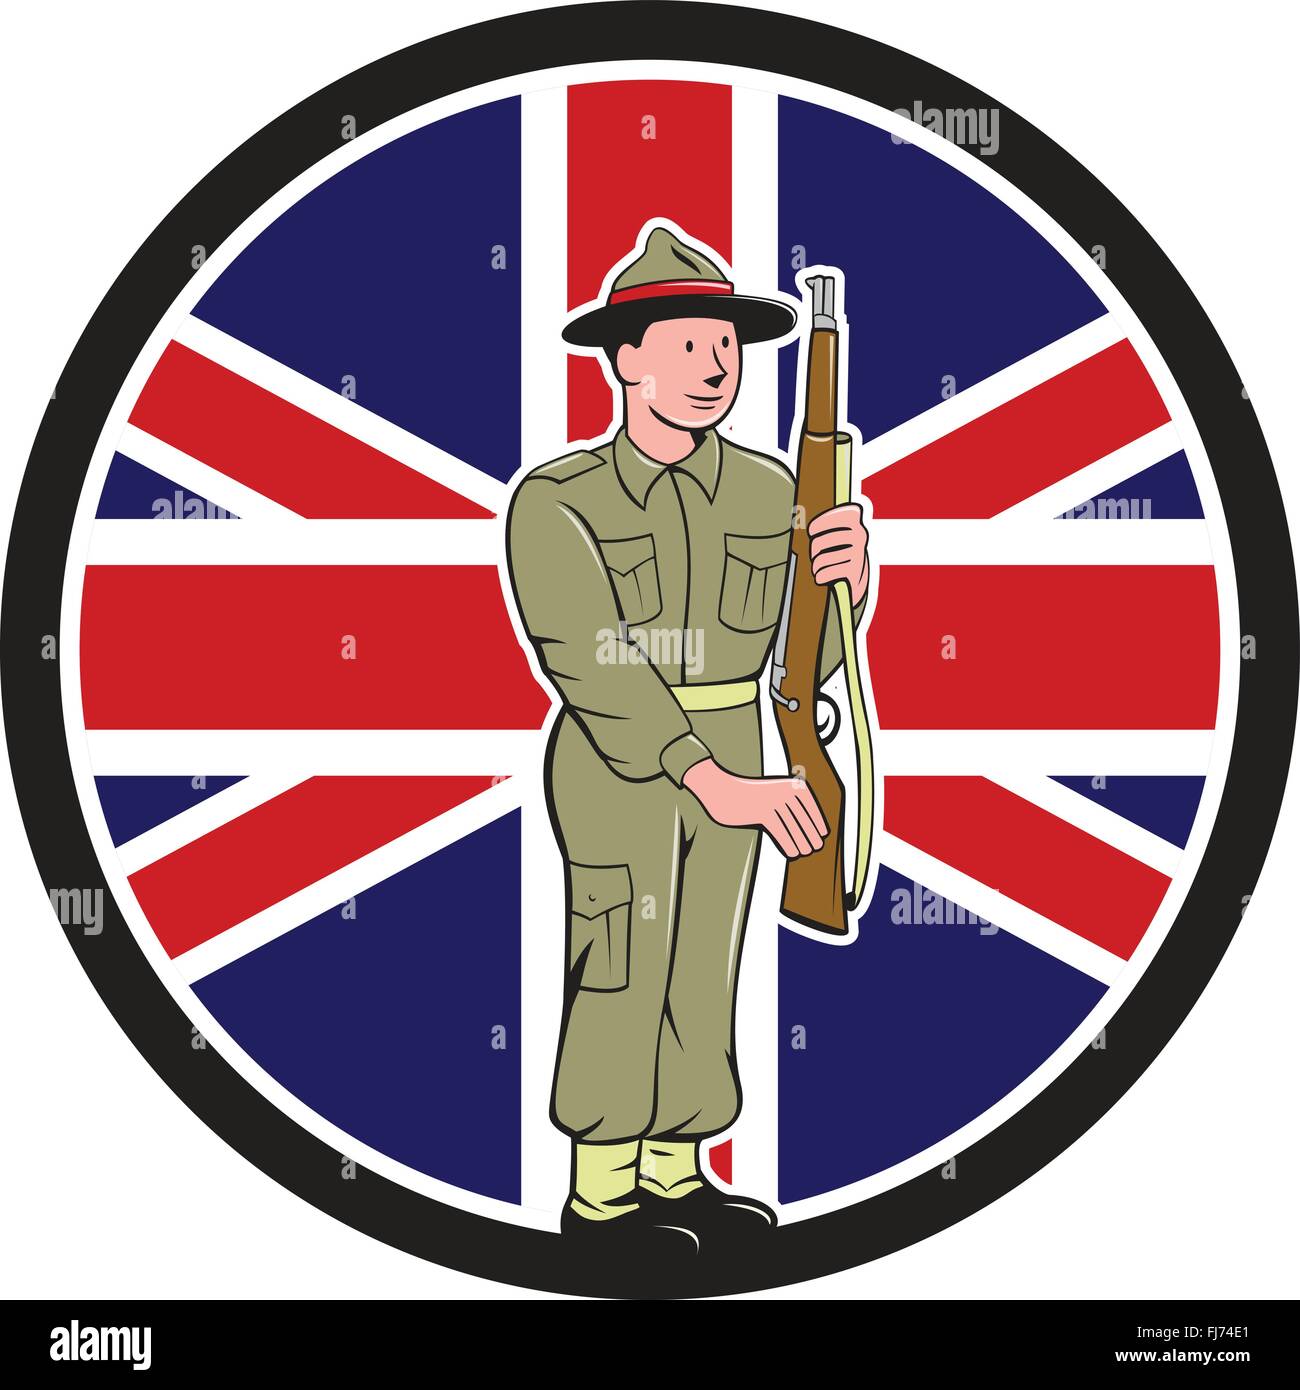 Abbildung eines zweiten Weltkrieges Soldat Presenting Wappen Gewehr Waffe für die Inspektion mit Union Jack British UK Flagge im Hintergrund im inneren Kreis im Cartoon-Stil gemacht. Stock Vektor